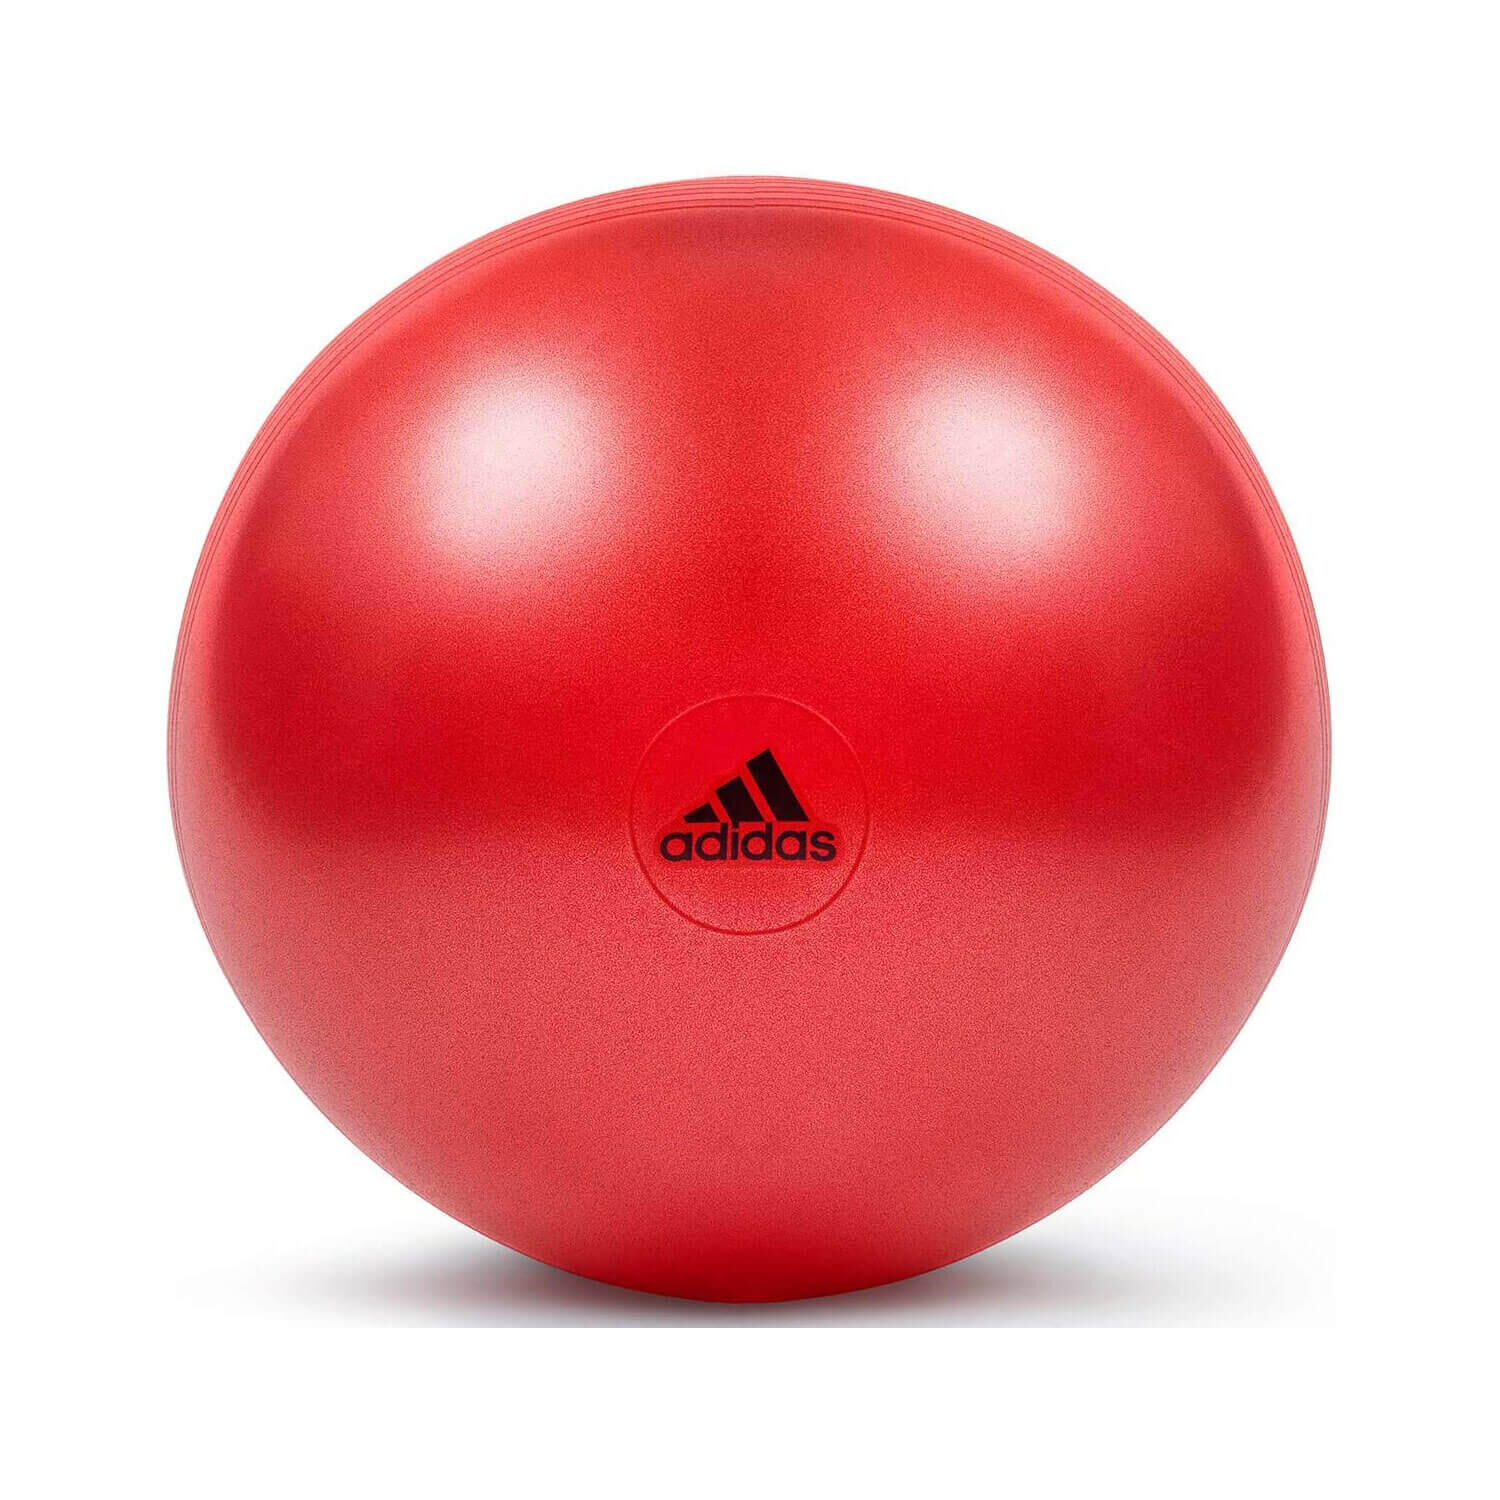 ADIDAS Adidas Gym Ball - 65cm, Red